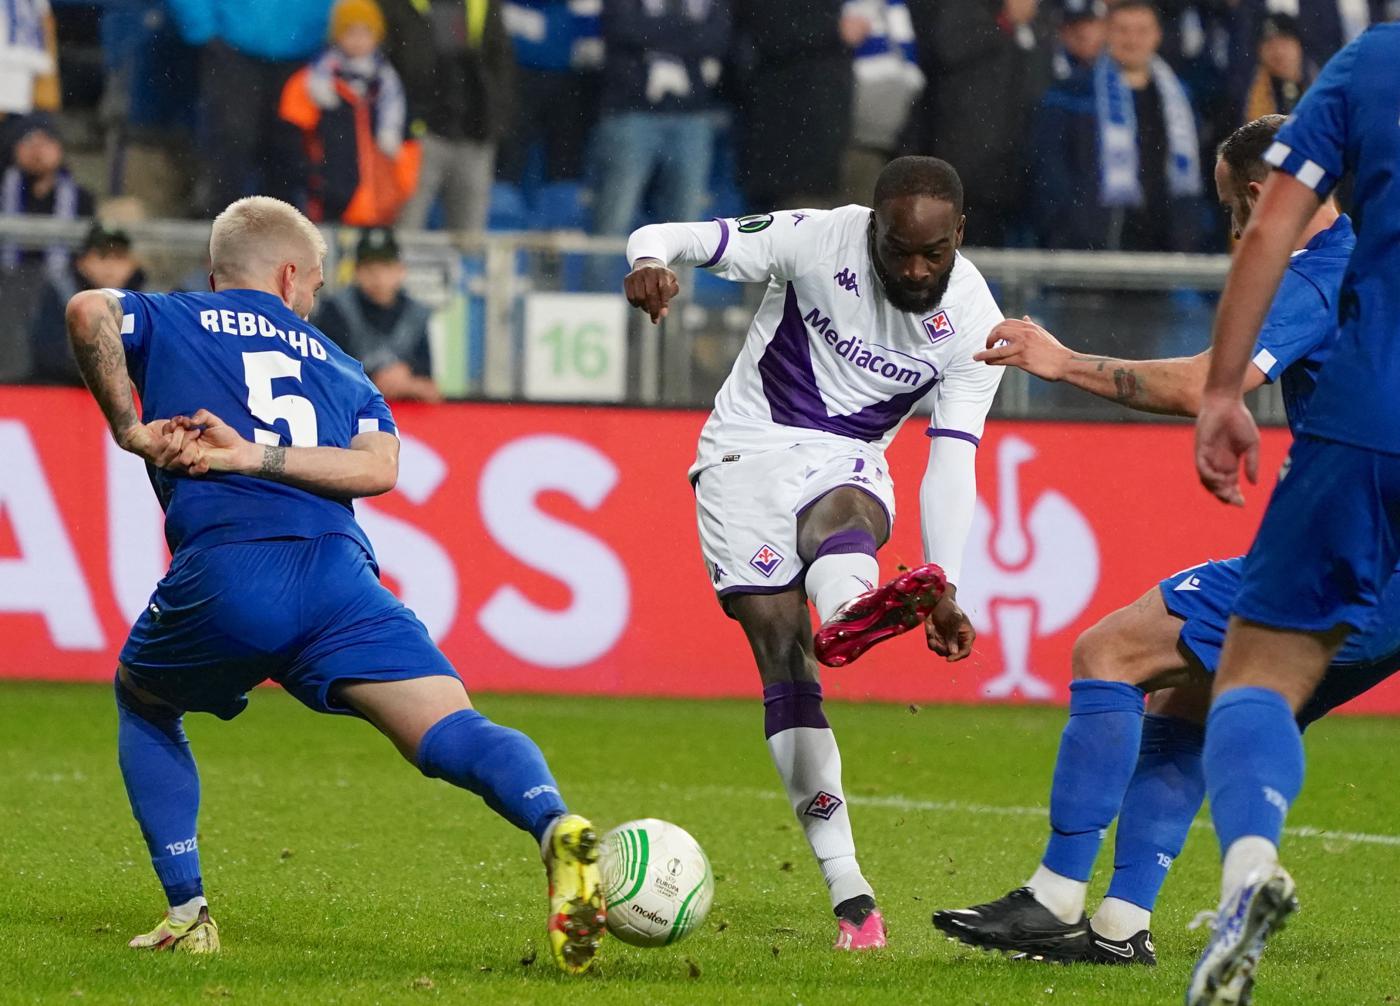 Lech - Fiorentina - 1:4. Liga konferencyjna. Przegląd meczu, statystyki